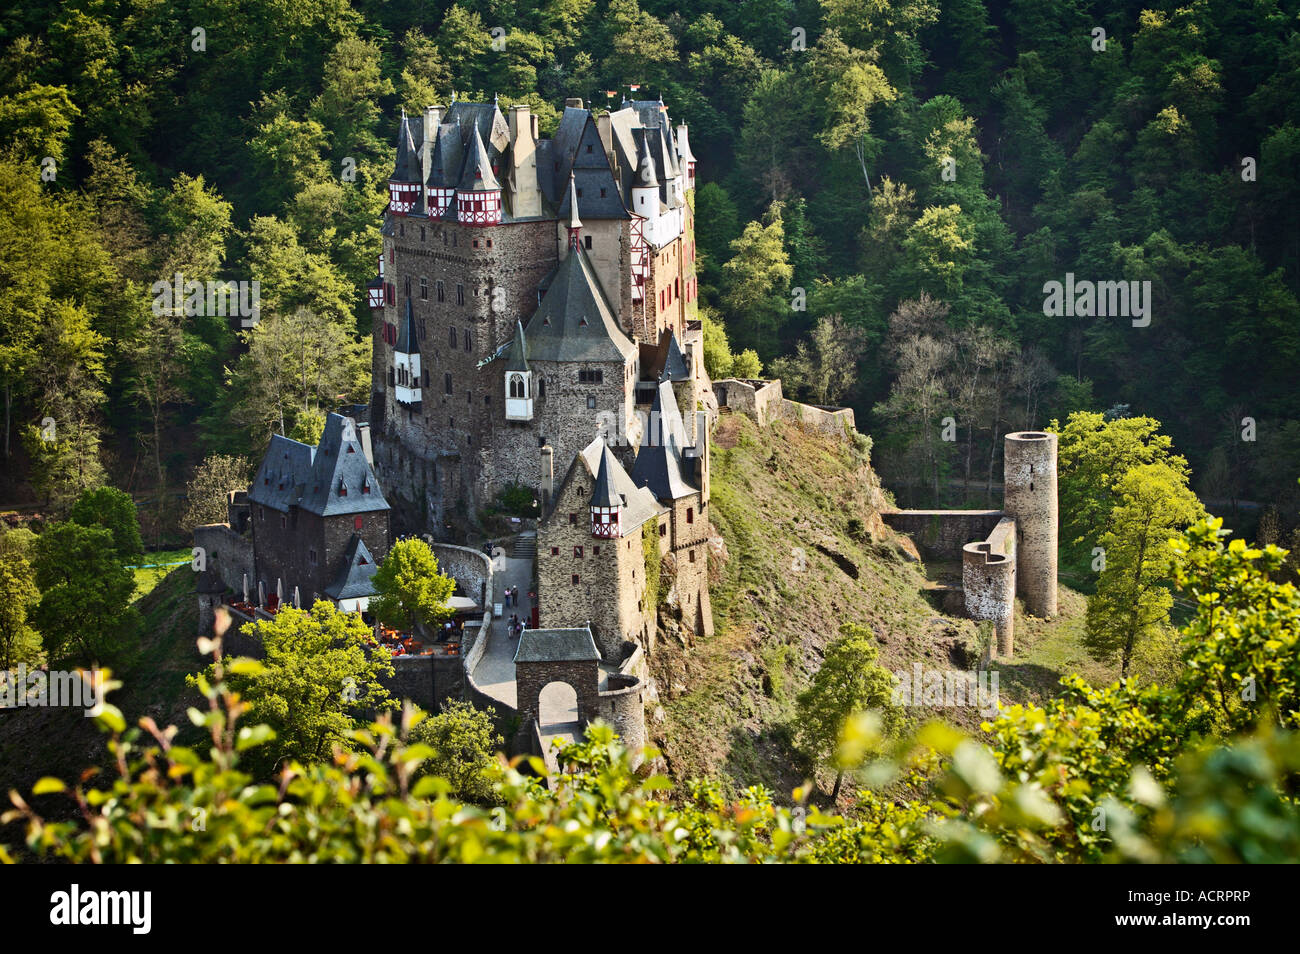 Burg Eltz castle, Rhineland-Palatinate, Germany Stock Photo